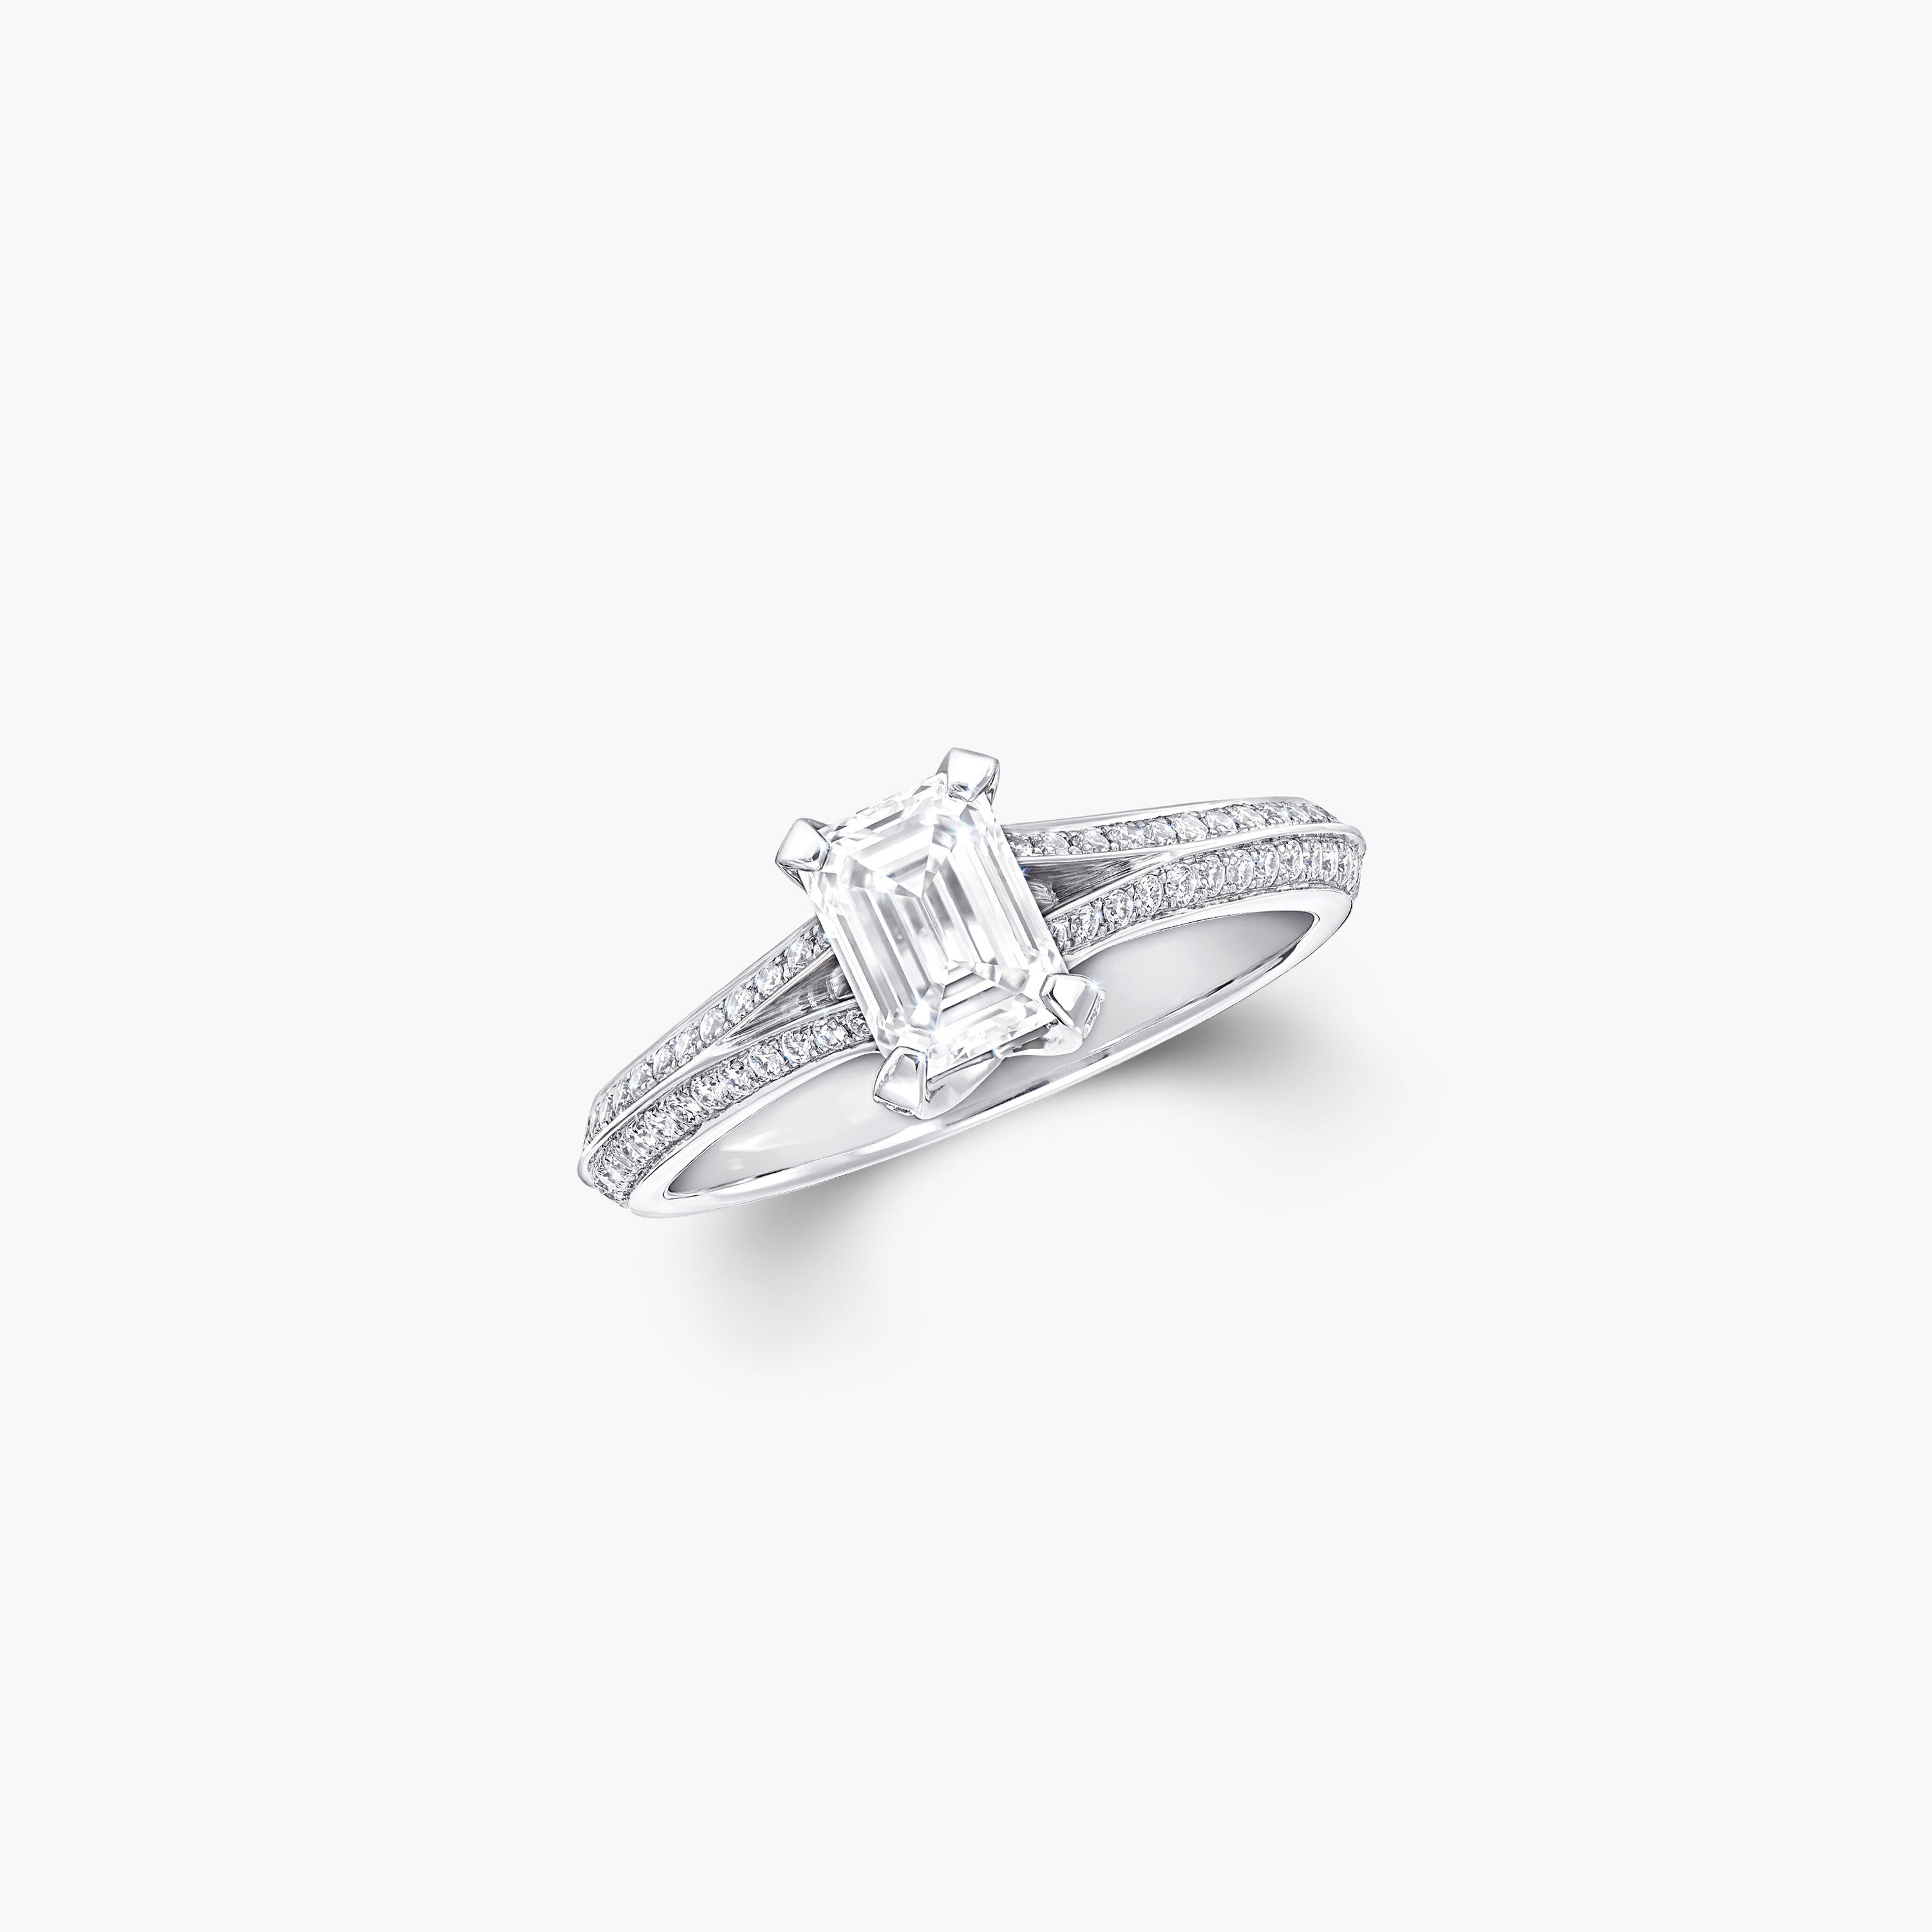 Legacy祖母綠形切割鑽石訂婚戒指, 鉑金| 格拉夫